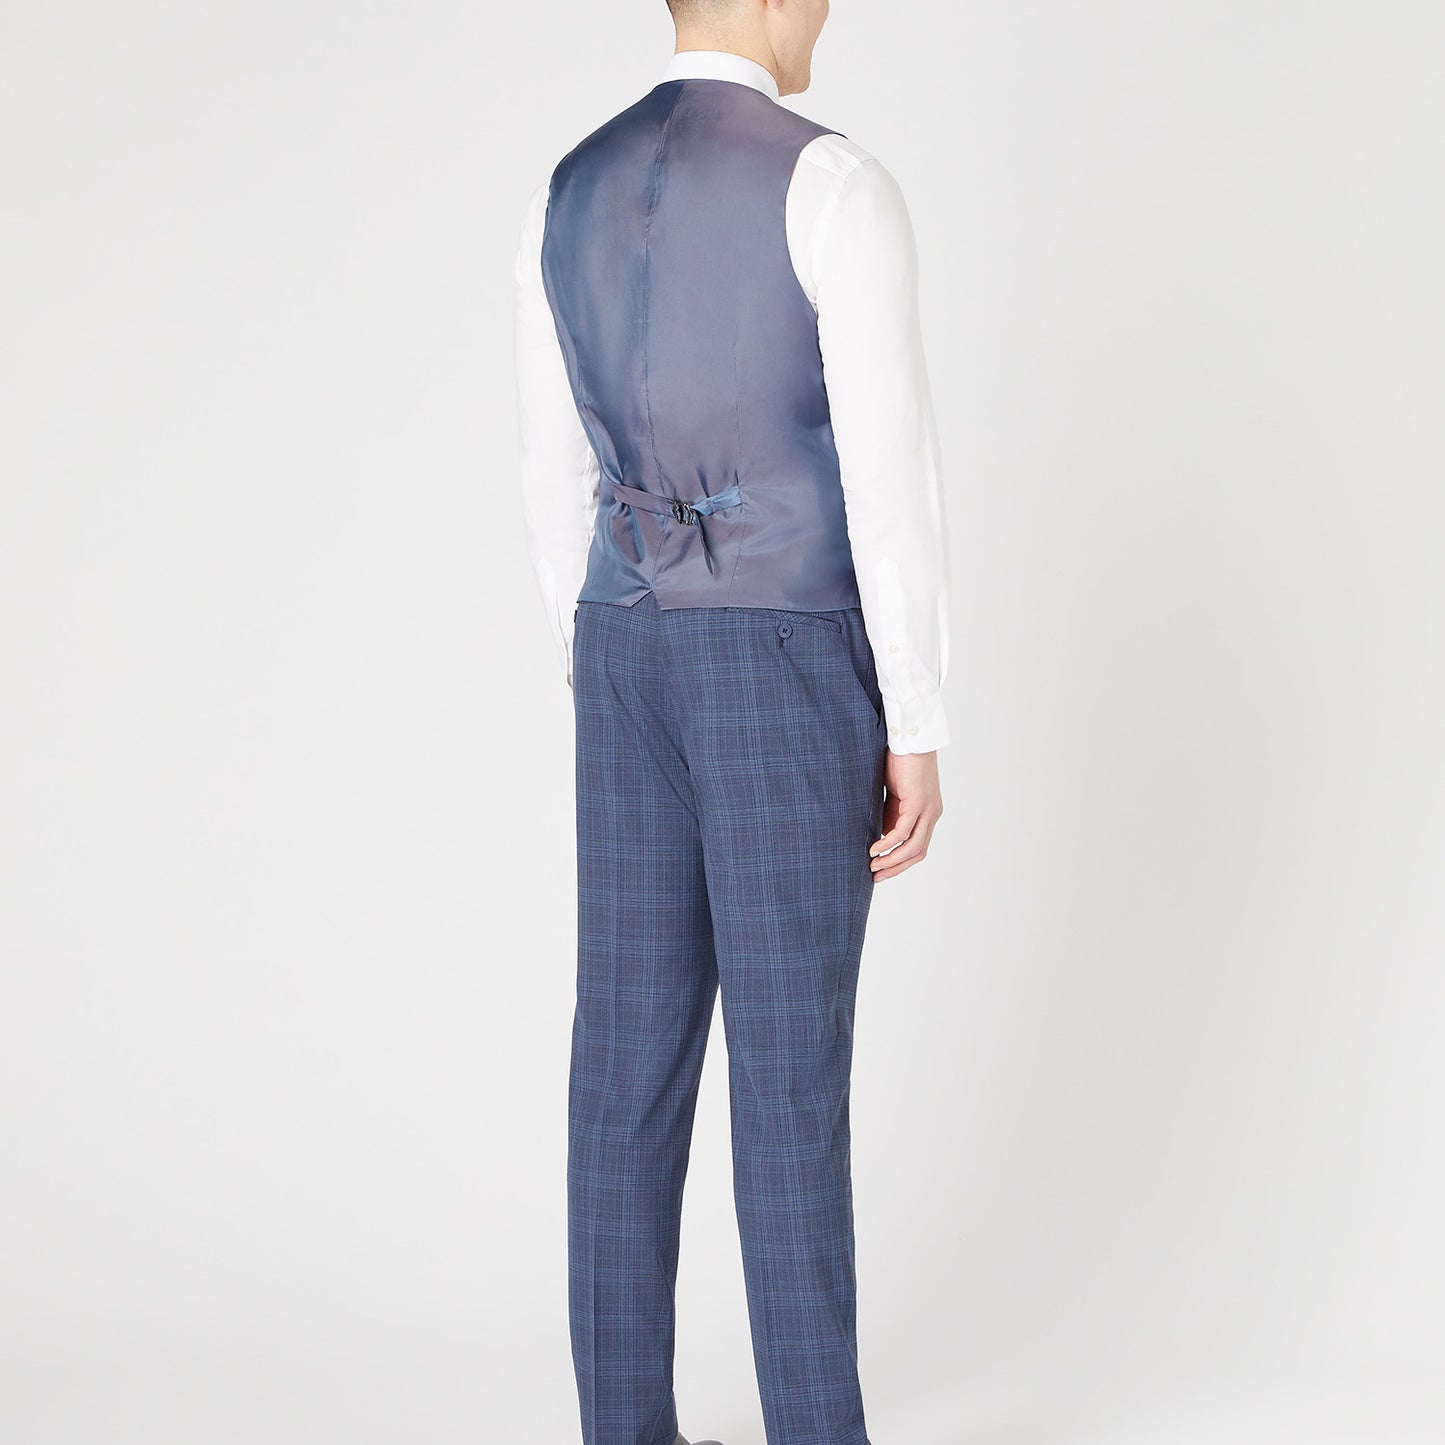 Remus Uomo 52033 27 Dark Blue Tapered Suit Waistcoat